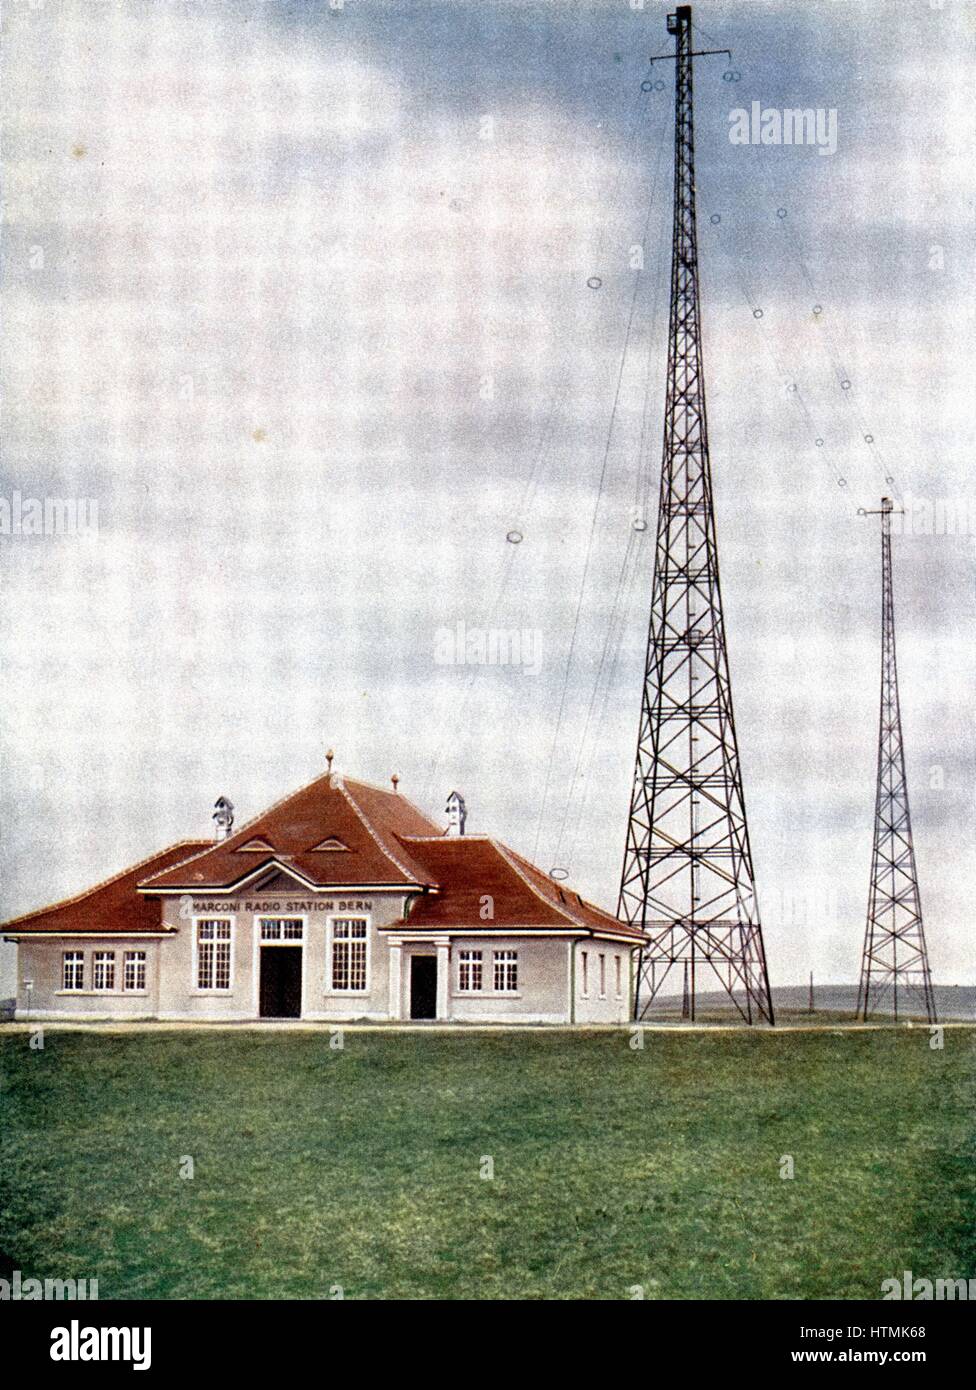 La estación de radio de Marconi en Berna, onda larga. Ilustración c1925 Foto de stock